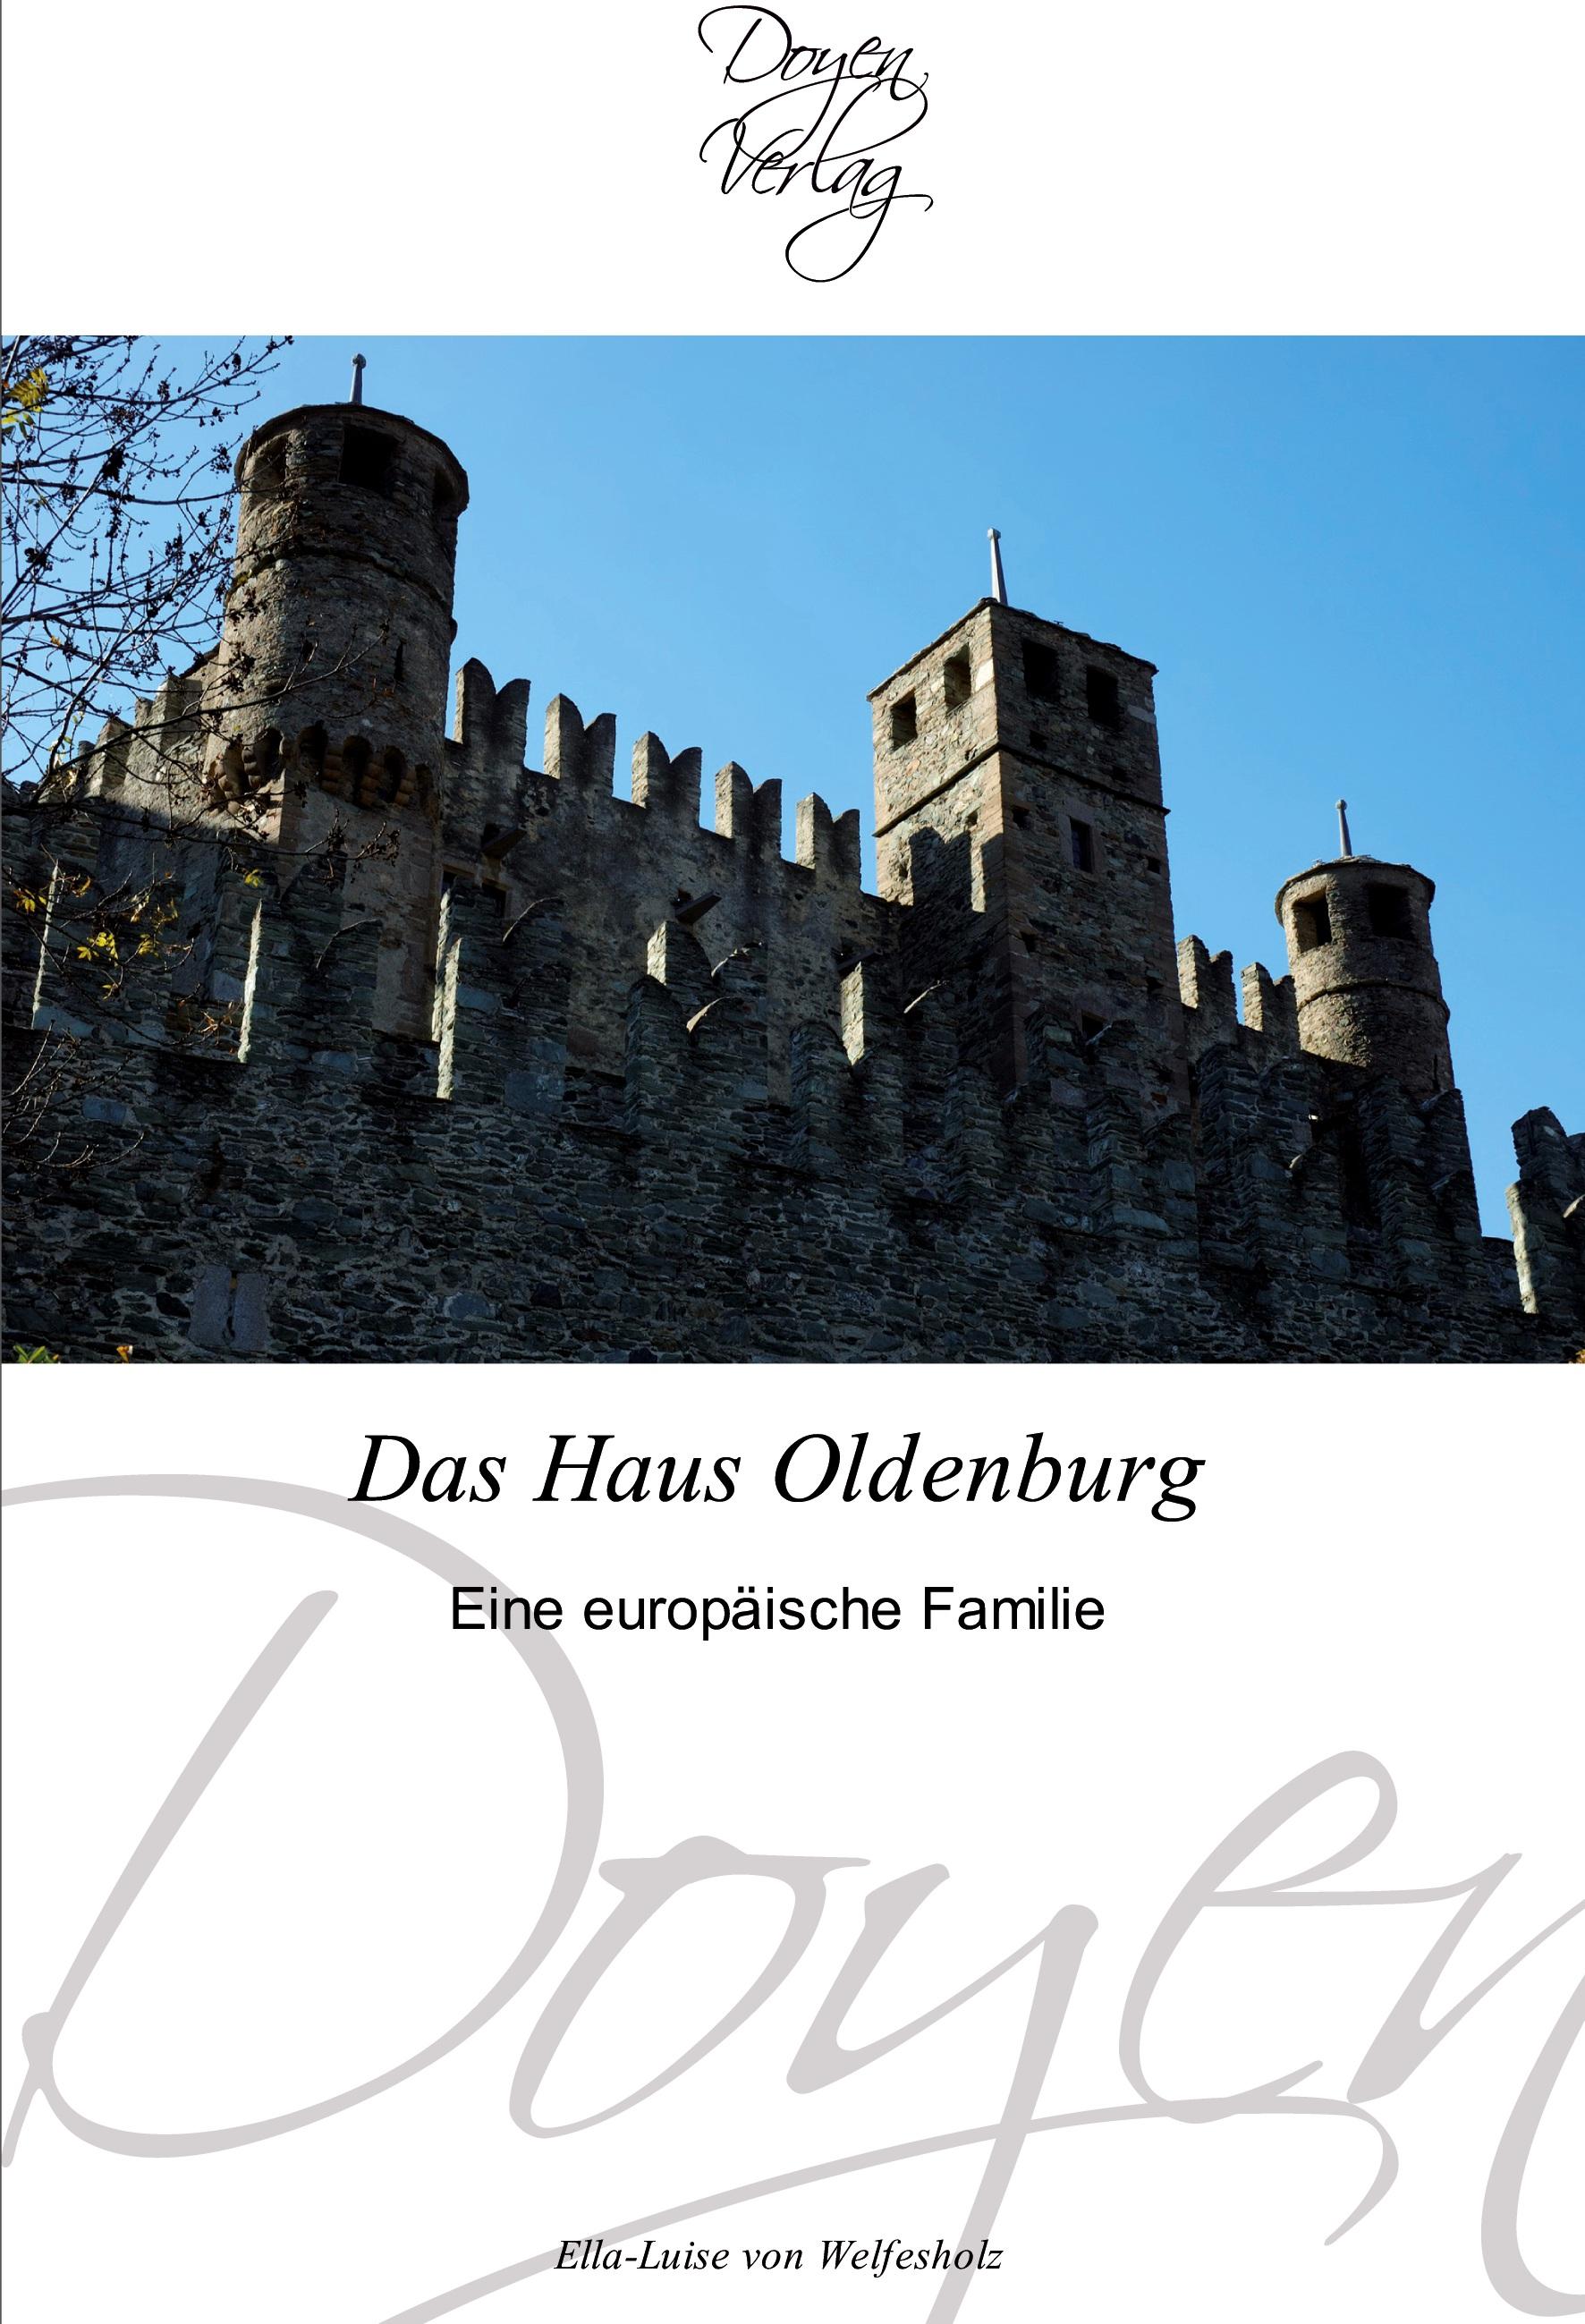 Das Haus Oldenburg | Eine europäische Familie | Ella-Luise von Welfesholz | Taschenbuch | Paperback | 104 S. | Deutsch | 2011 | Doyen Verlag | EAN 9783841700353 - Welfesholz, Ella-Luise von